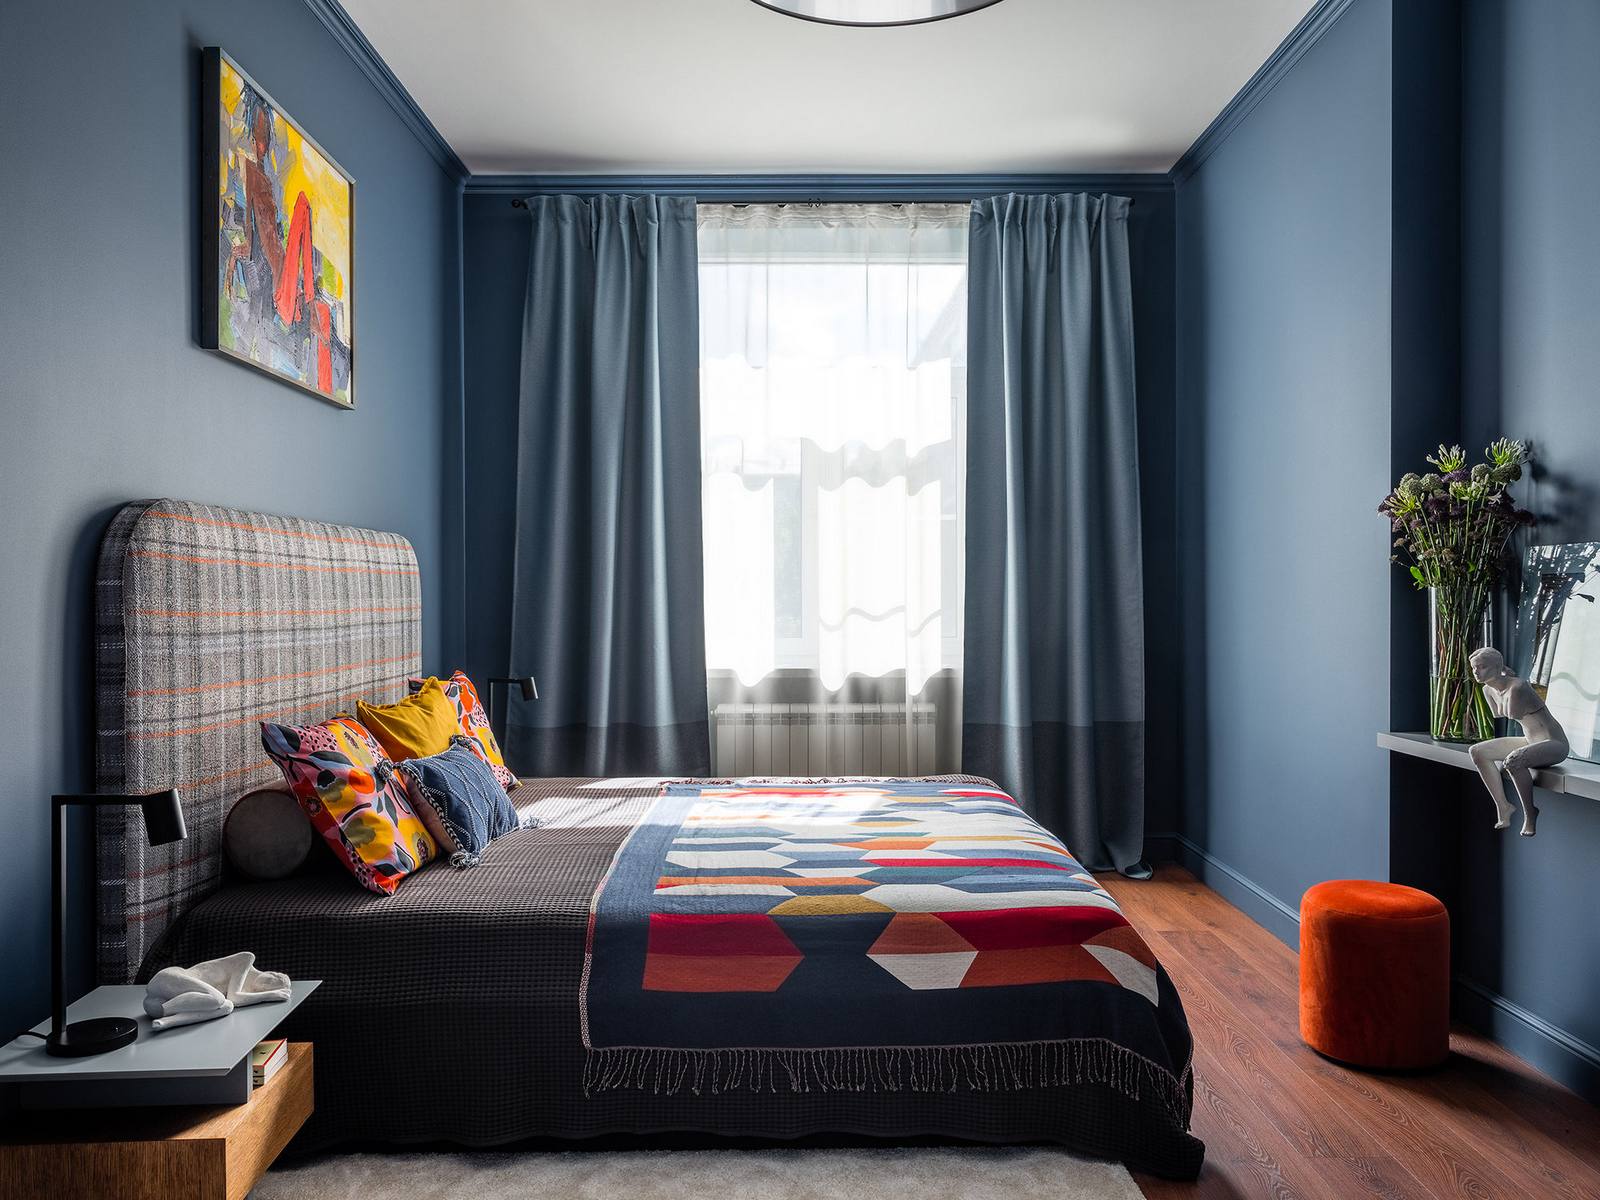 Nếu hành lang, phòng khách sử dụng gam màu xám chủ đạo, phòng bếp lấy nền tường màu cam làm điểm nhấn thì tại phòng ngủ, gam màu xanh lam được ưu ái từ màu sơn cho đến rèm che cửa sổ dày dặn. 